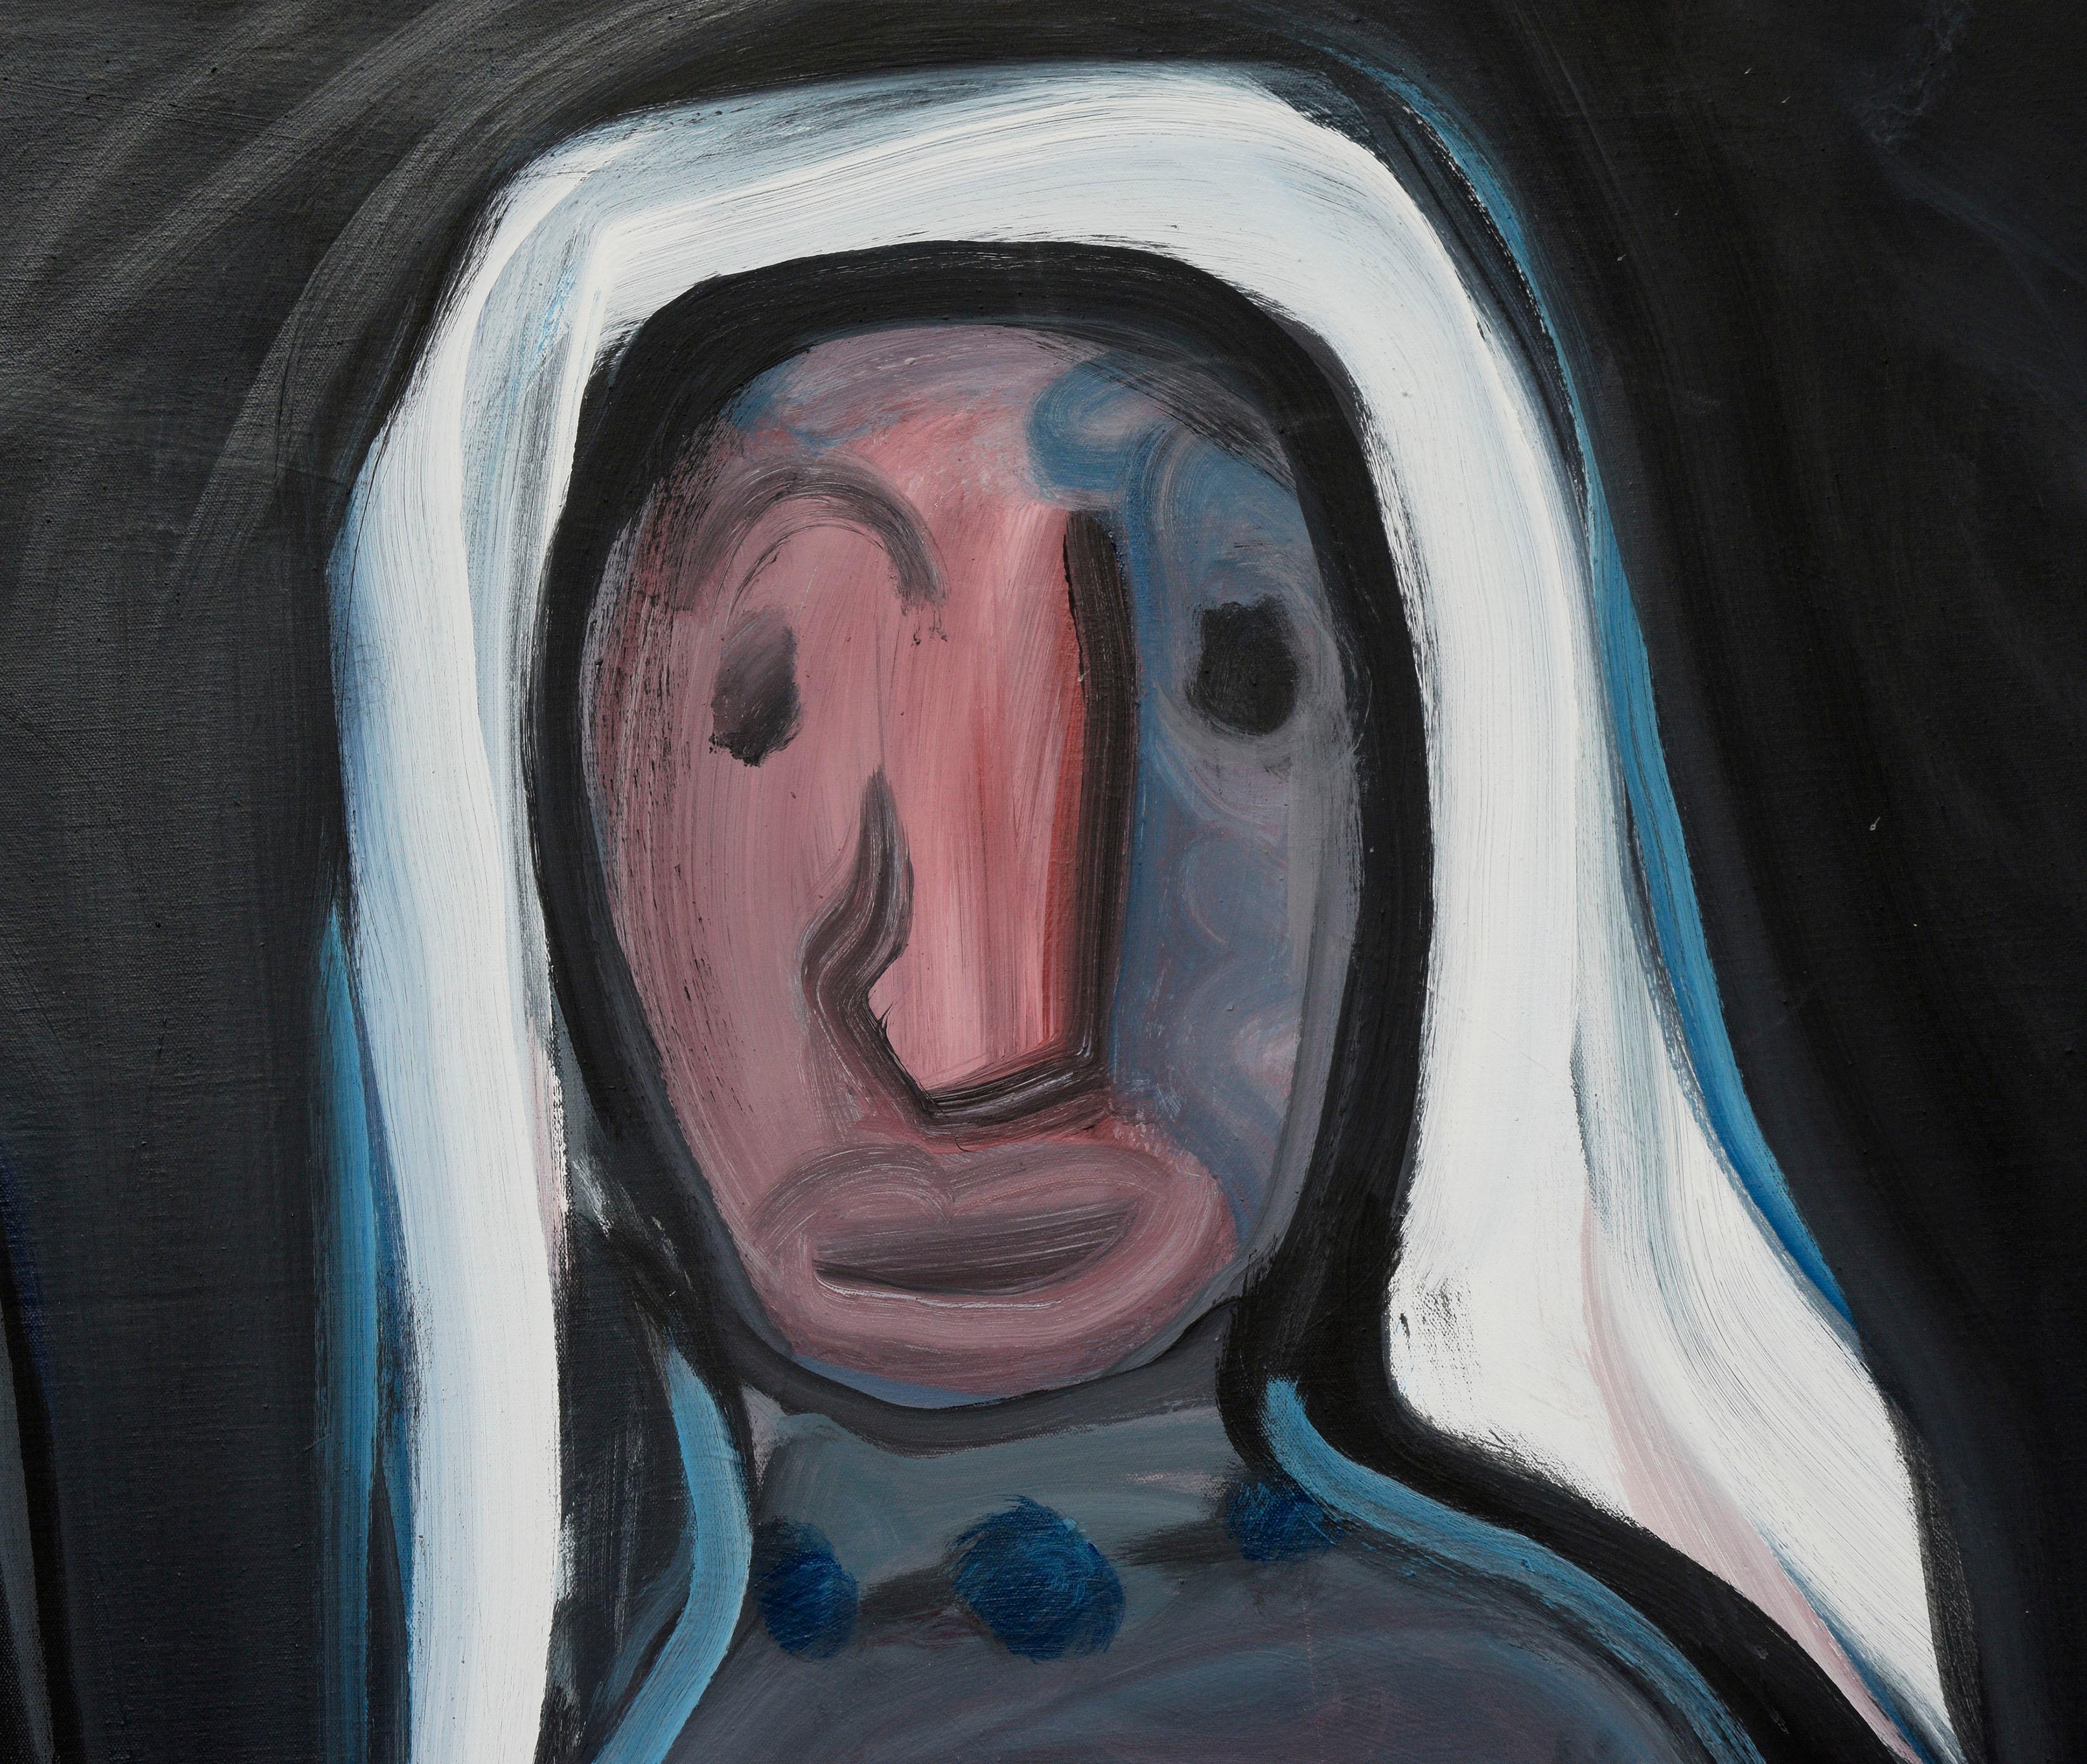 Ein beeindruckendes, großformatiges, abstraktes, expressionistisches, figuratives Acrylbild auf Leinwand des Bay Area Künstlers Julius Wasserstein (Amerikaner, 1924-1985). Zwei abstrahierte Figuren, ein Mann im Anzug und eine Frau in einem blauen